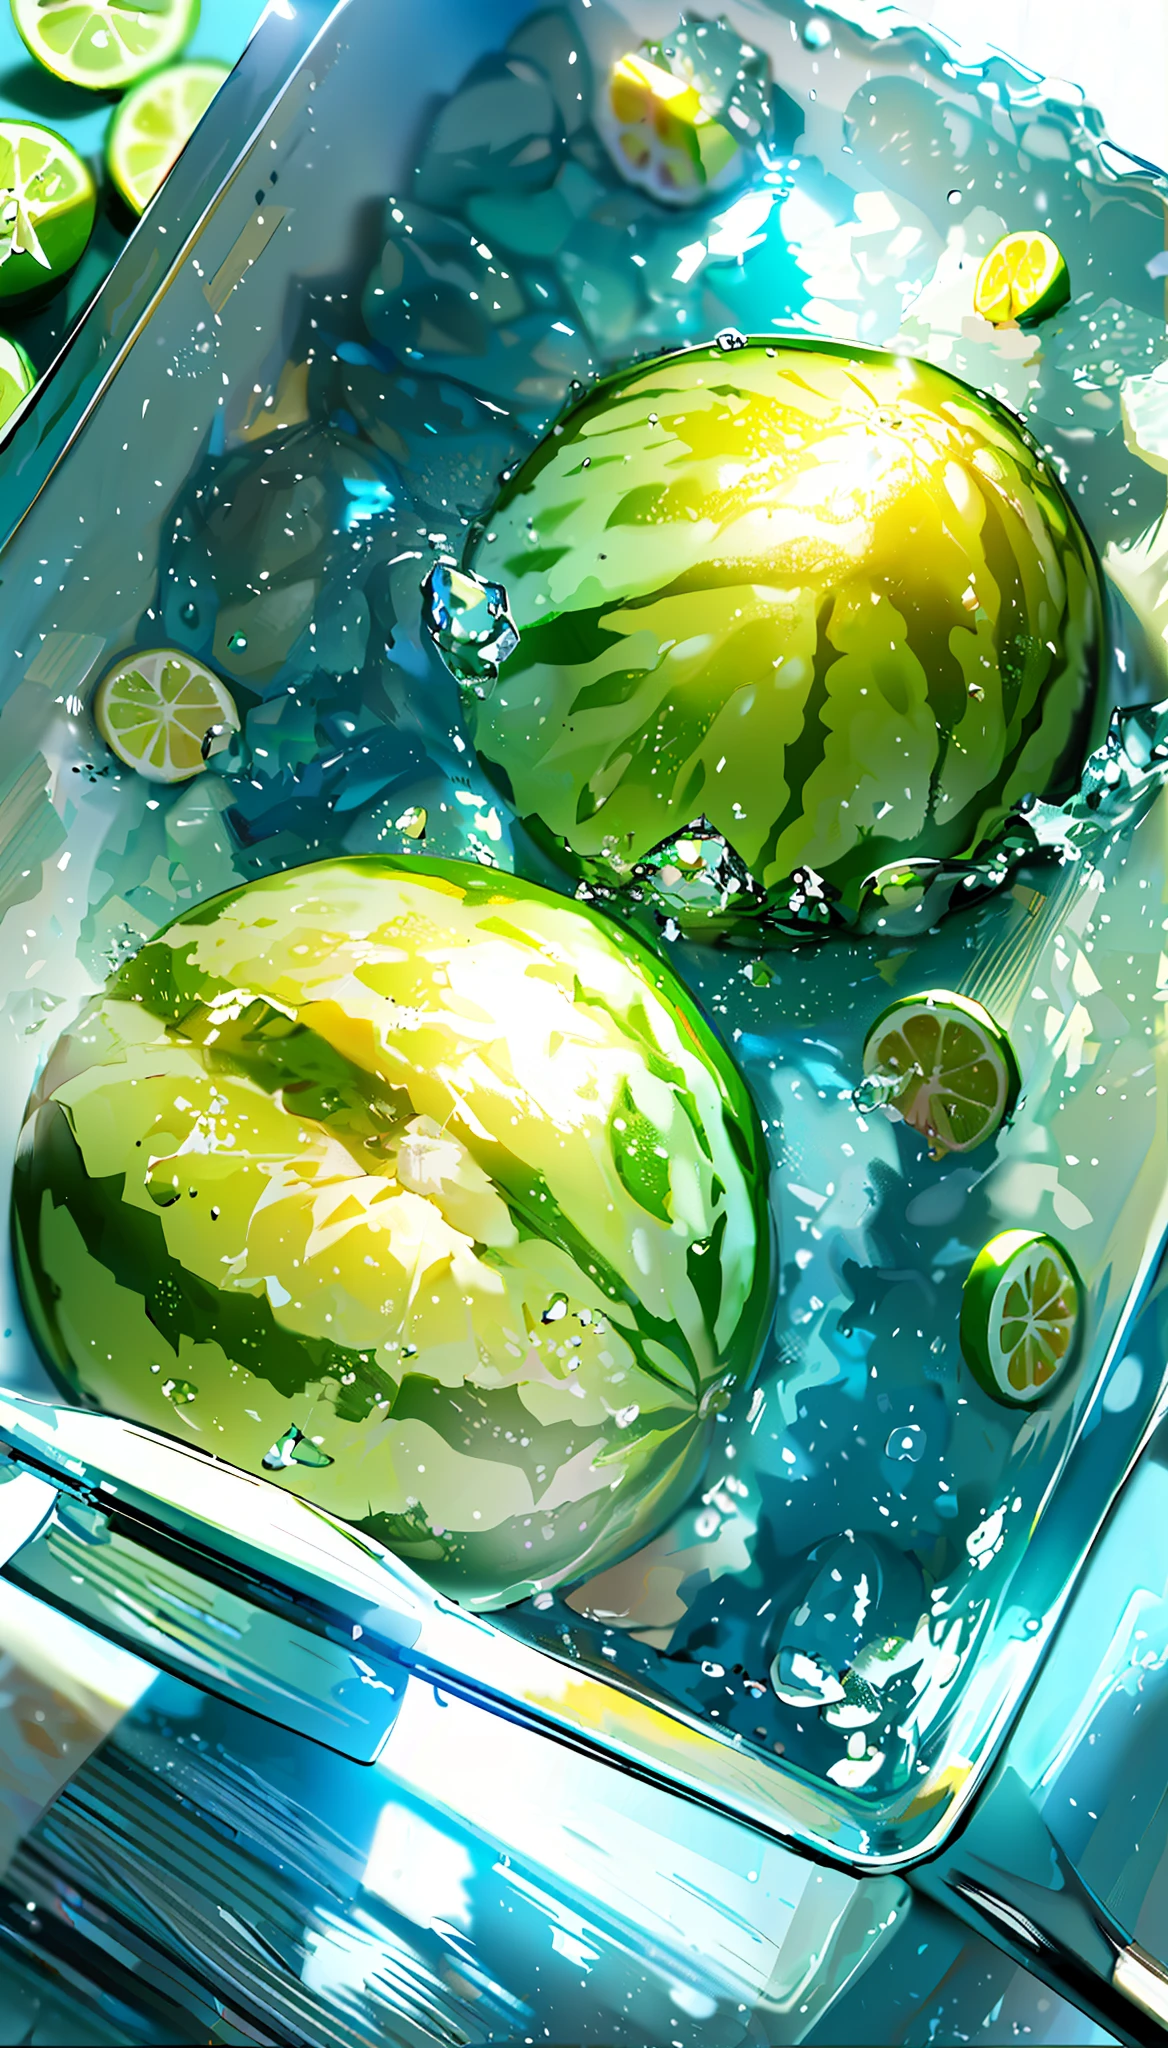 (最高品質, 8k, 32K, 傑作, 超高解像度: 1.2), watermelon with 水滴, アイスキューブ, レモン slices, レモン, ライム, 水滴